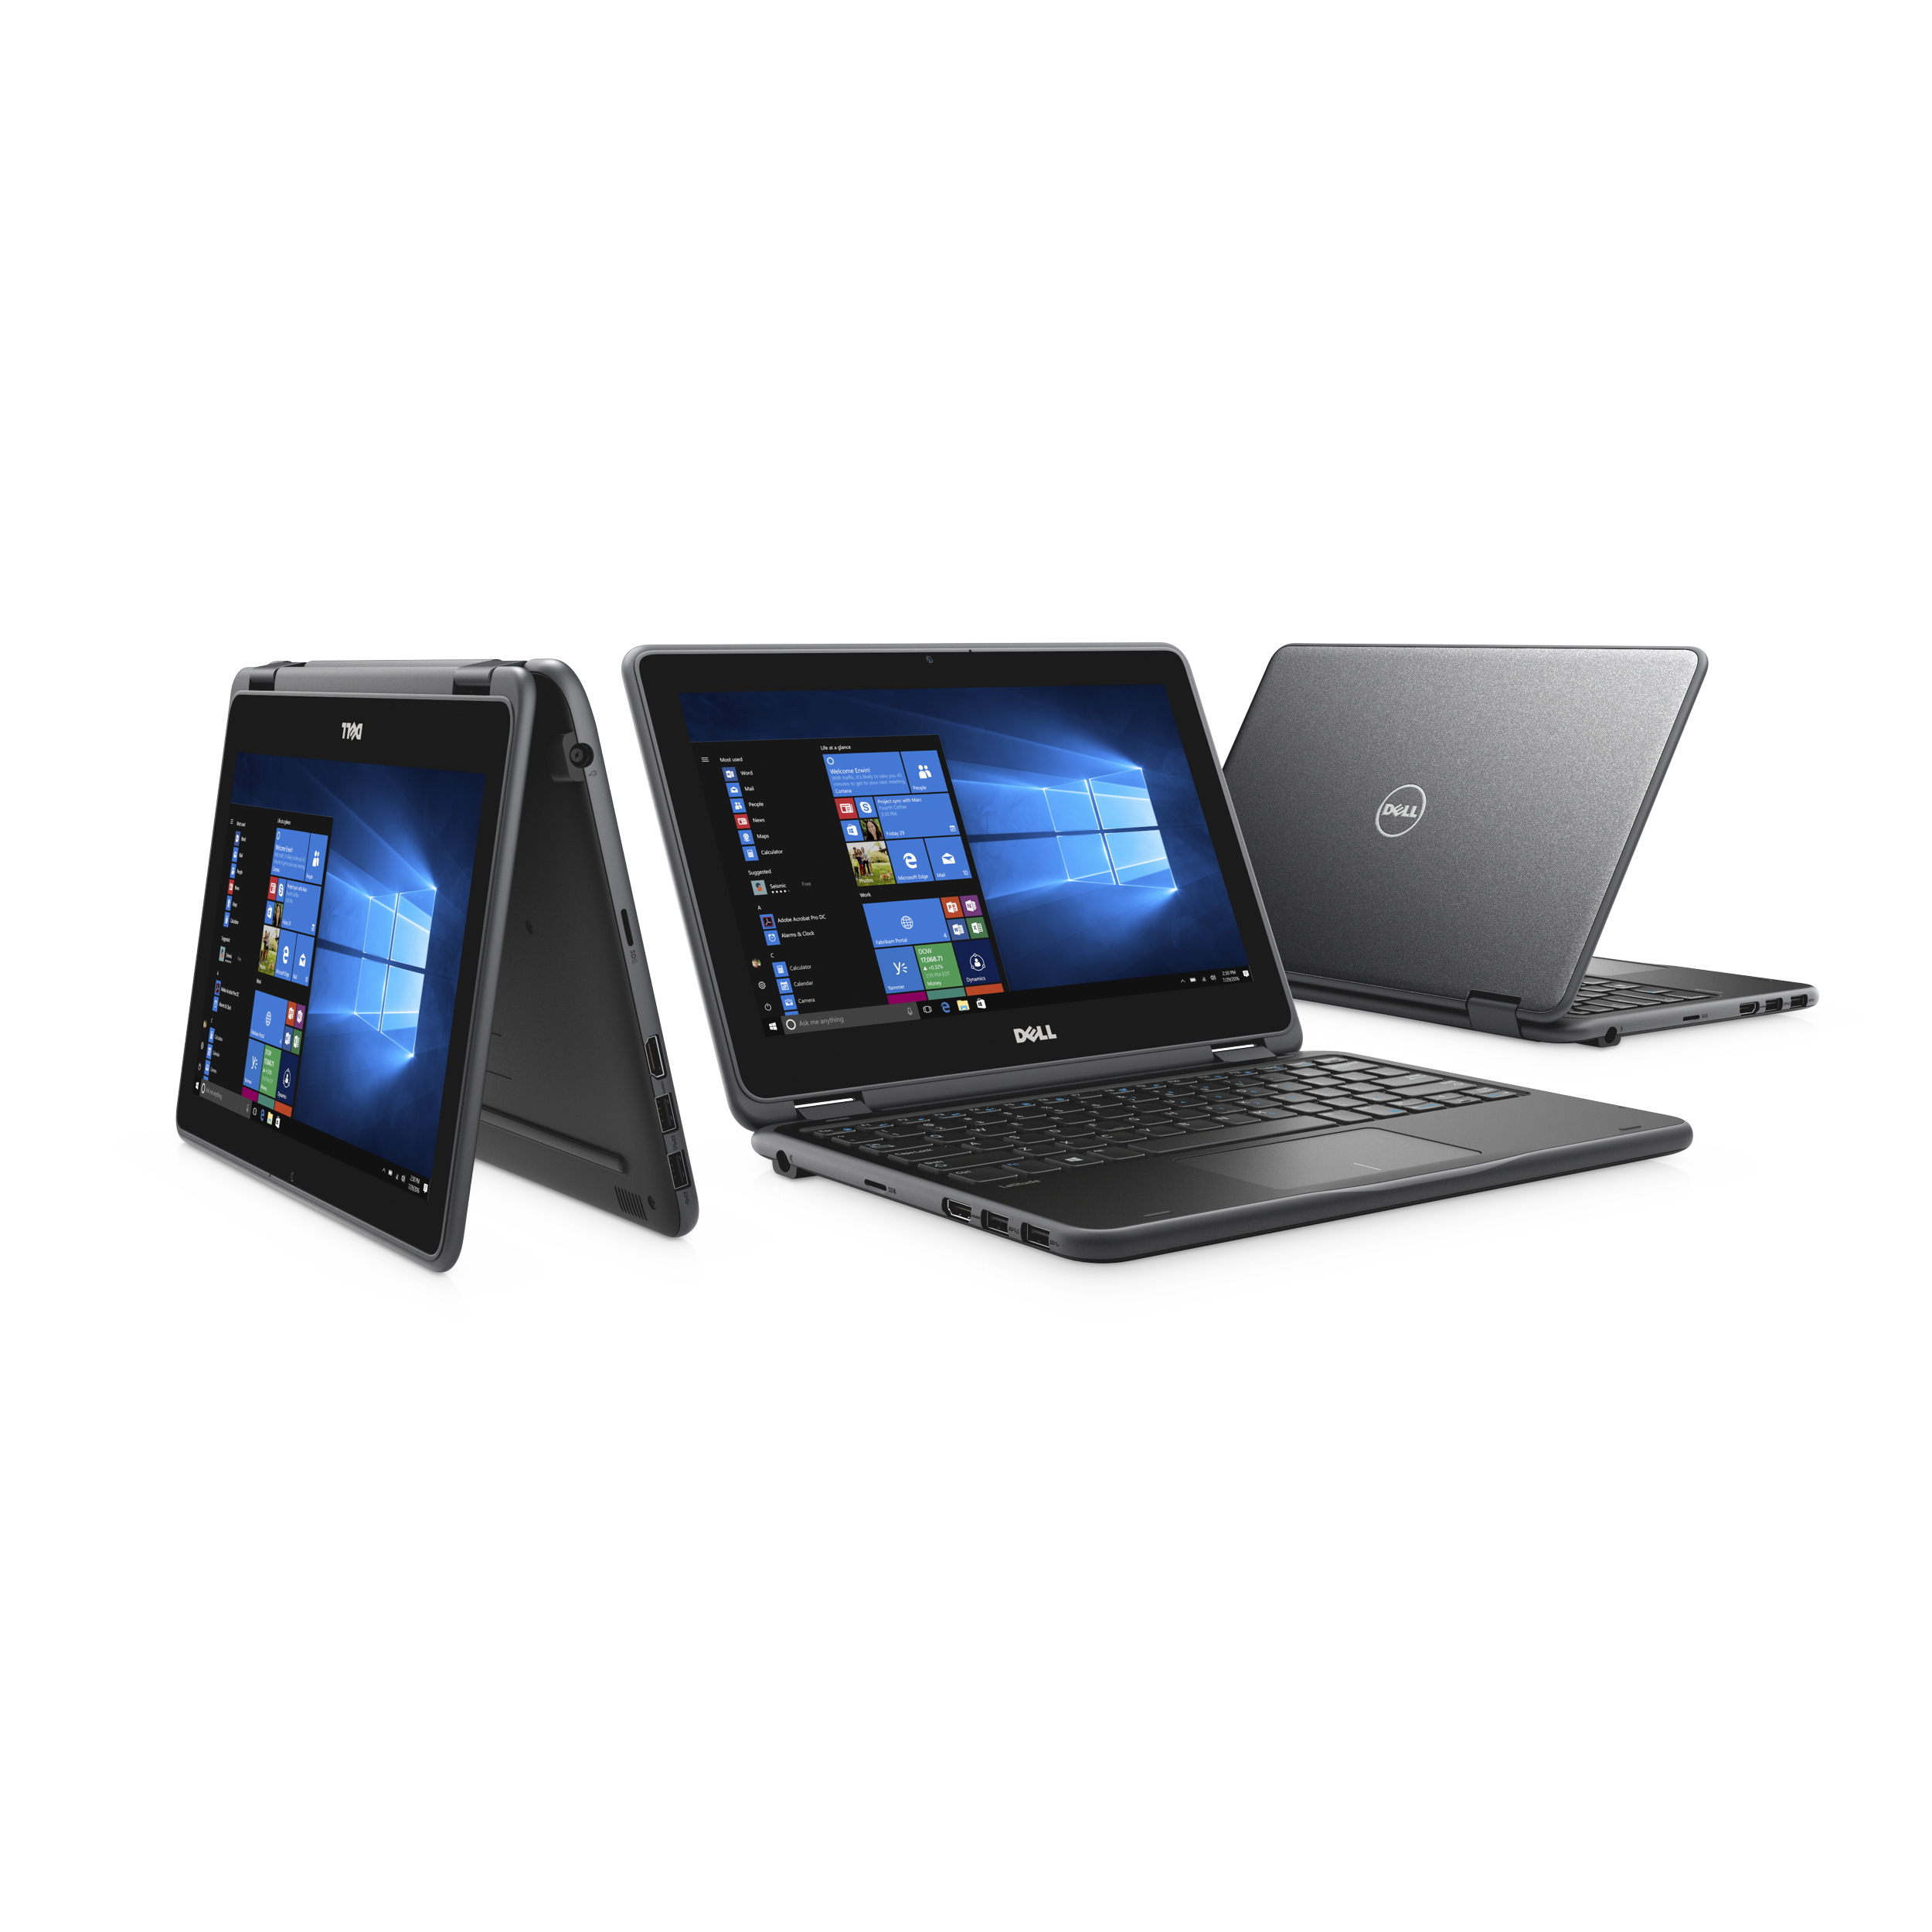 Dell präsentiert neue PCs und Monitore für den Bildungsbereich